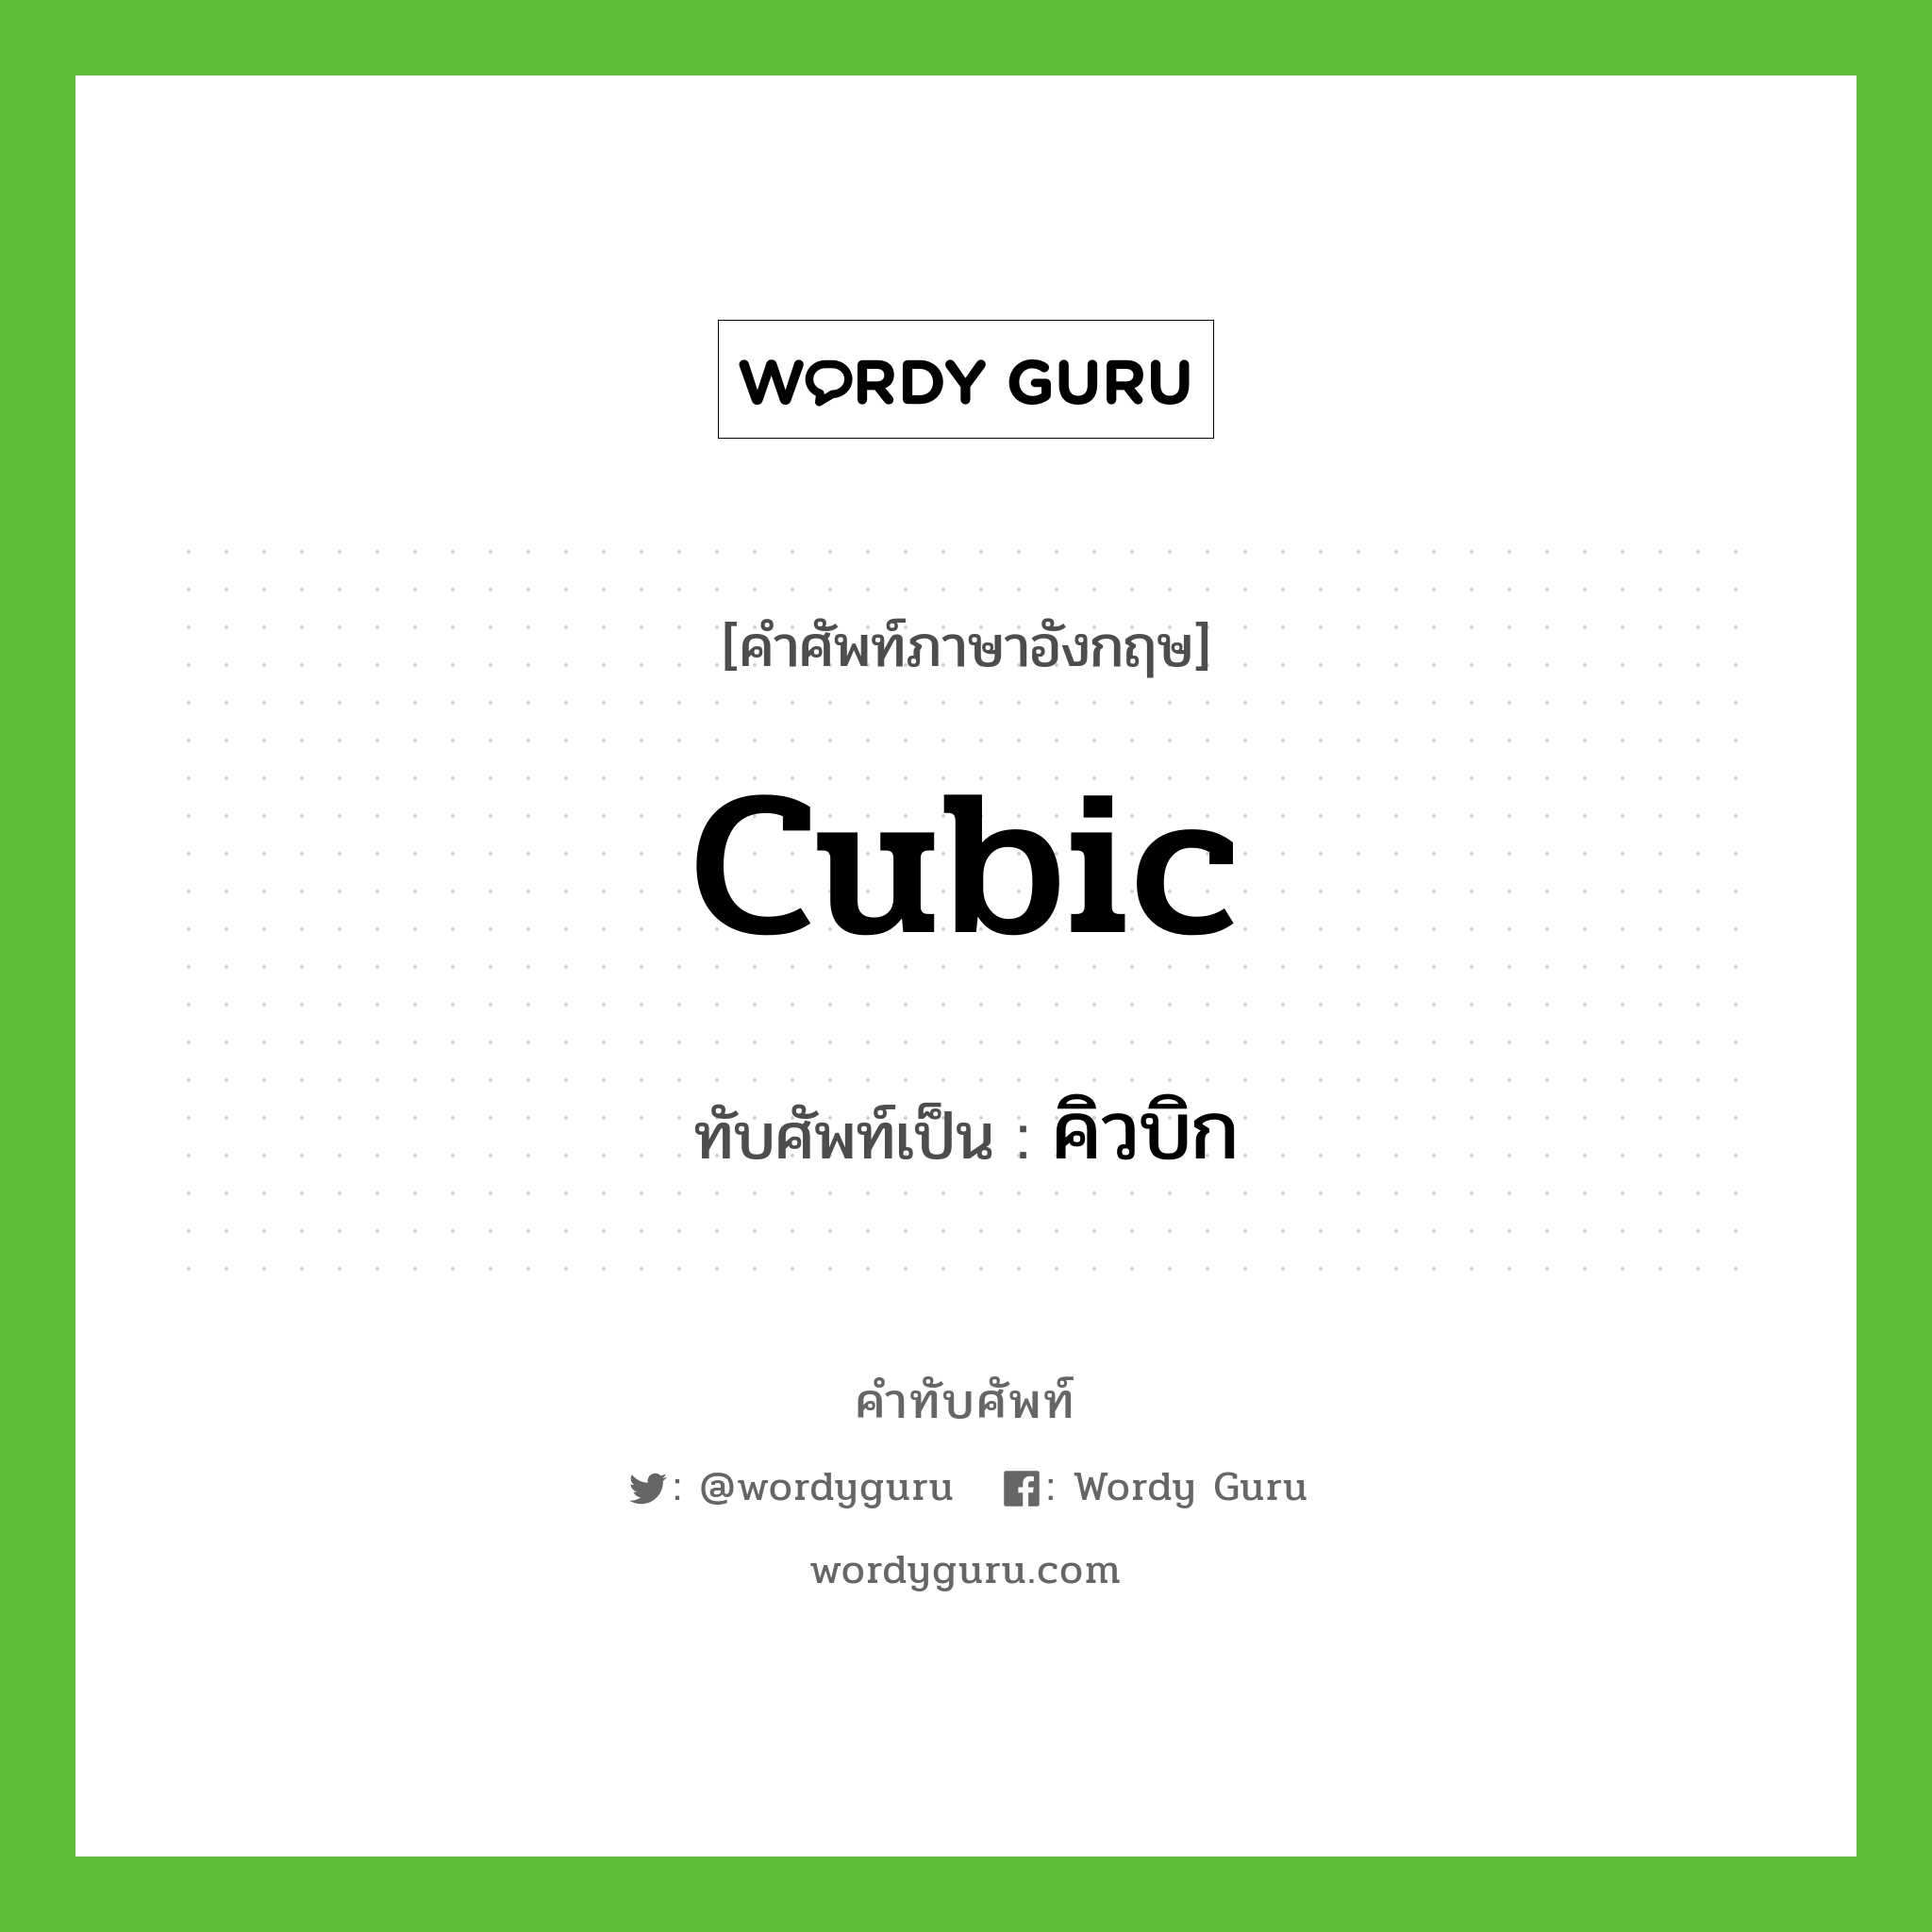 cubic เขียนเป็นคำไทยว่าอะไร?, คำศัพท์ภาษาอังกฤษ cubic ทับศัพท์เป็น คิวบิก